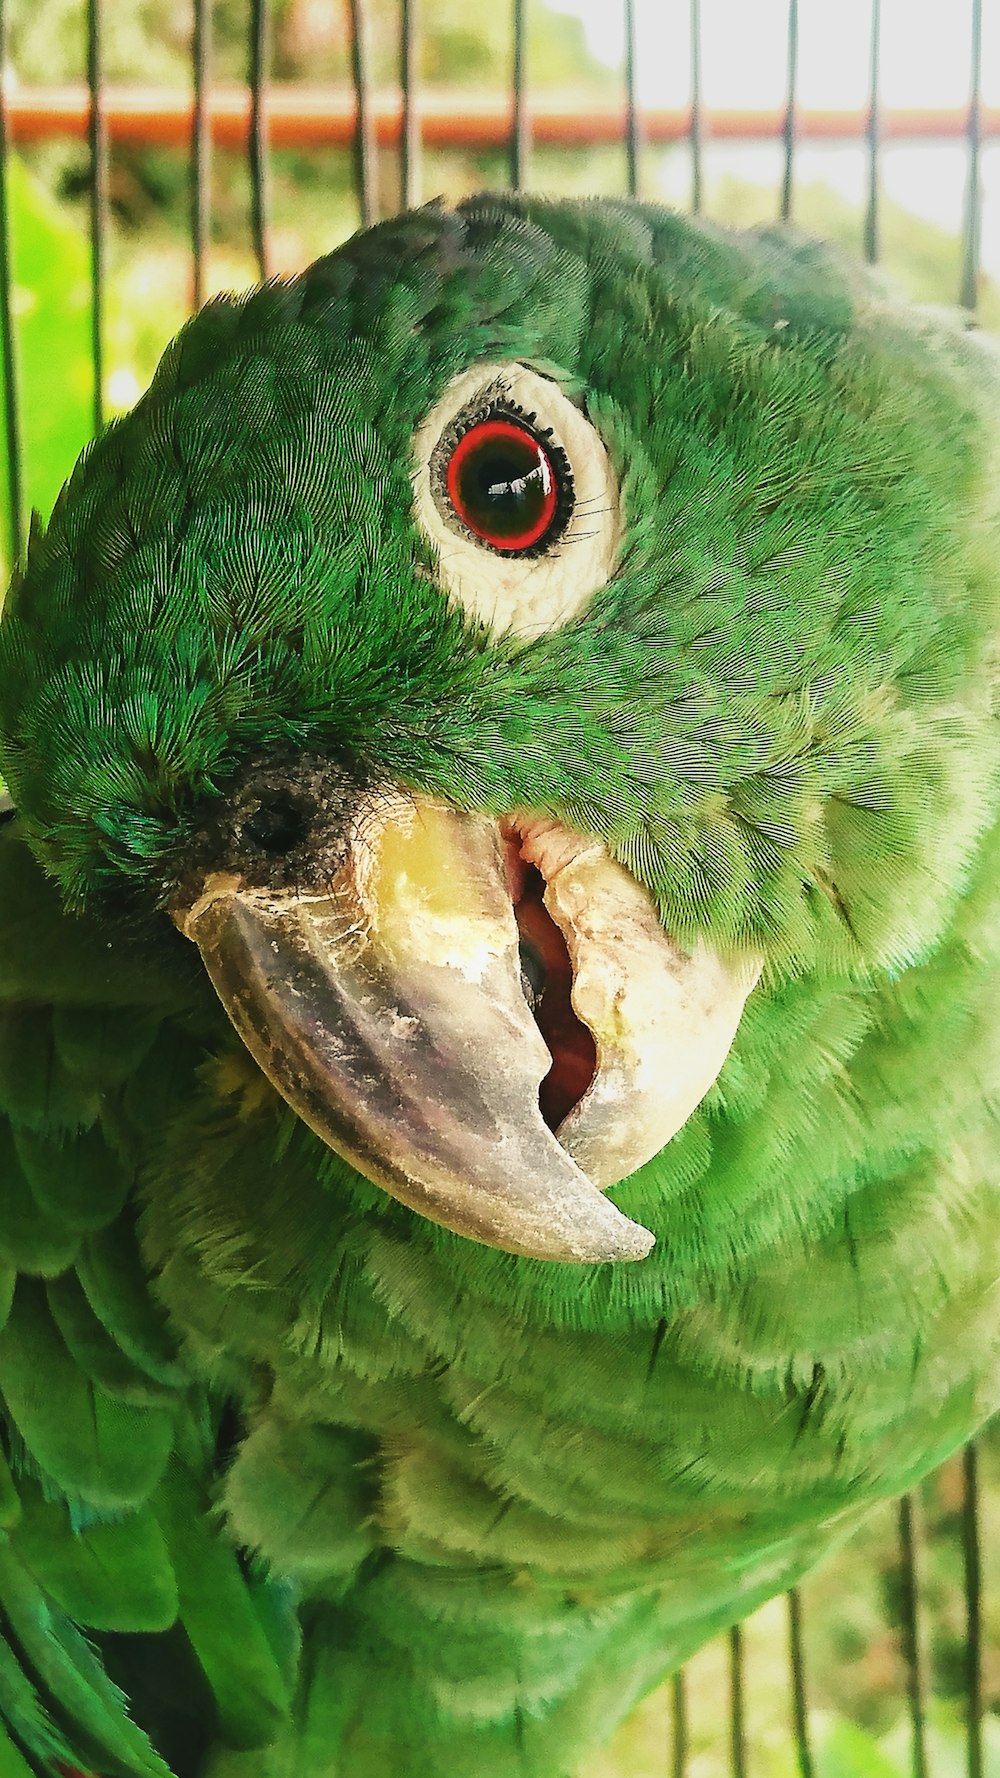 pájaro verde y amarillo en fotografía de primer plano